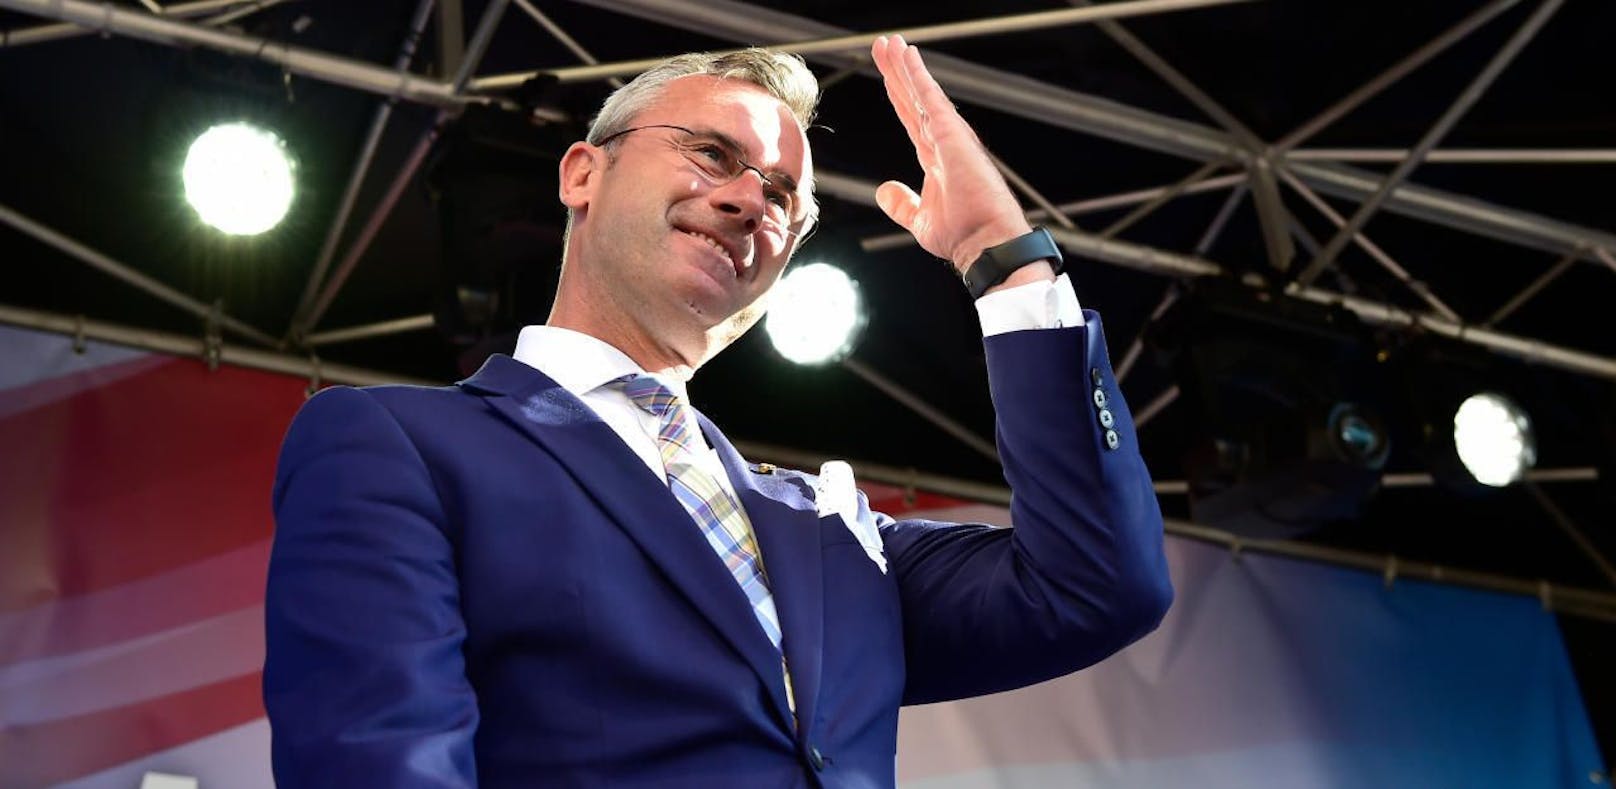 FPÖ-Parteichef Norbert Hofer beim Wahlkampfabschluss der FPÖ vor der EU-Wahl 